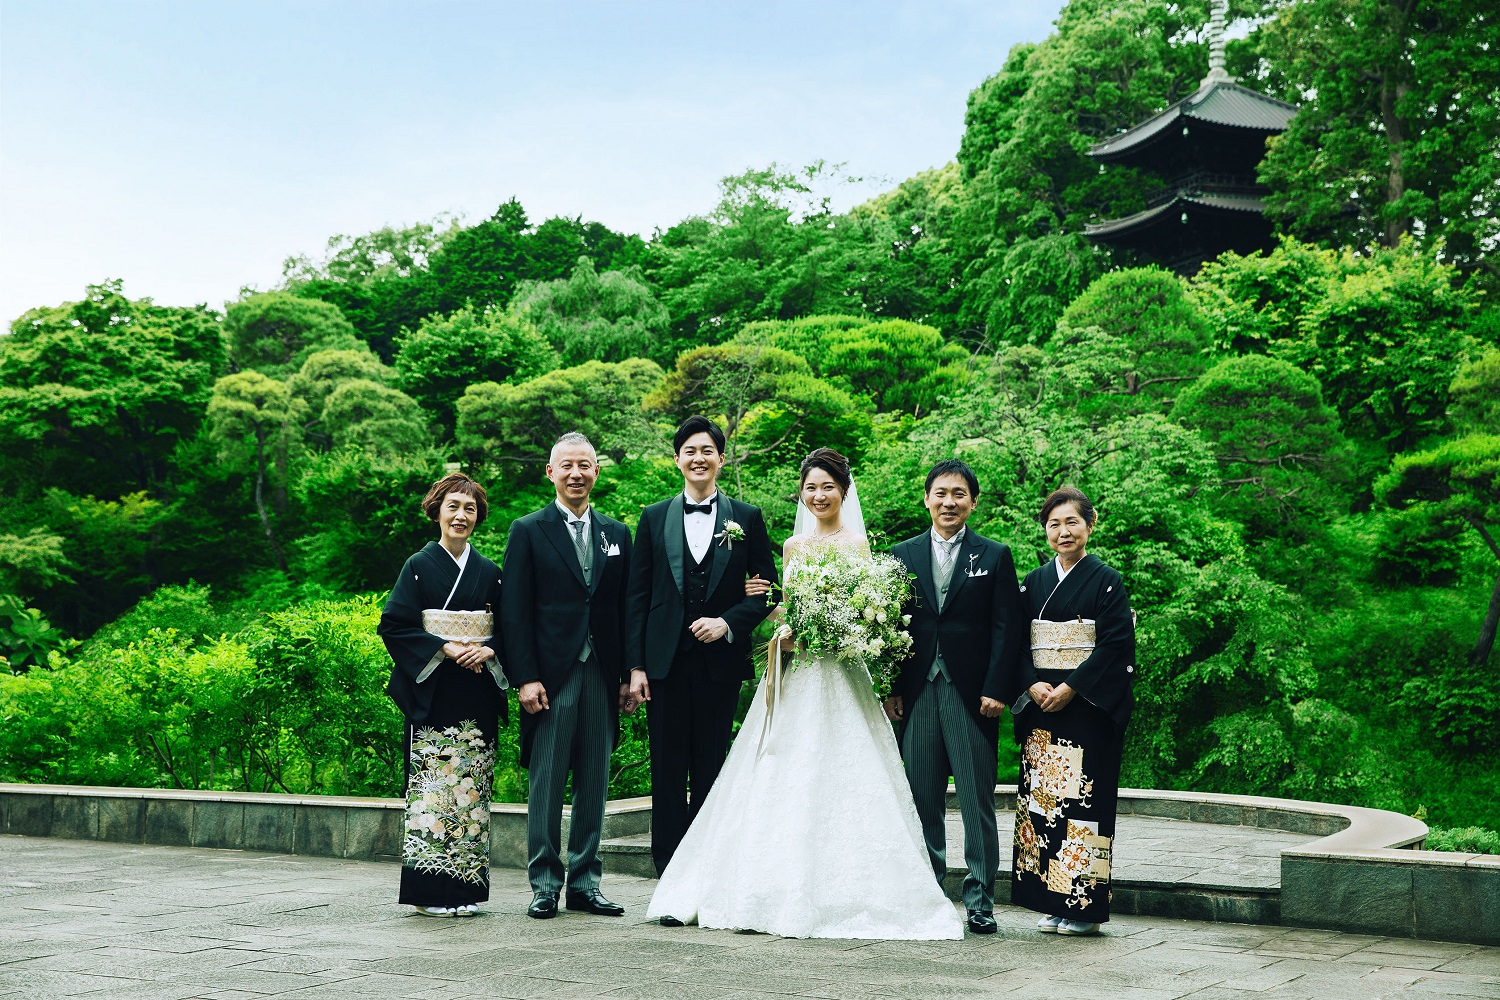 友達がいない方 少ない方におすすめしたい結婚式スタイルとは 東京の結婚式 結婚式場 ホテル椿山荘東京 公式